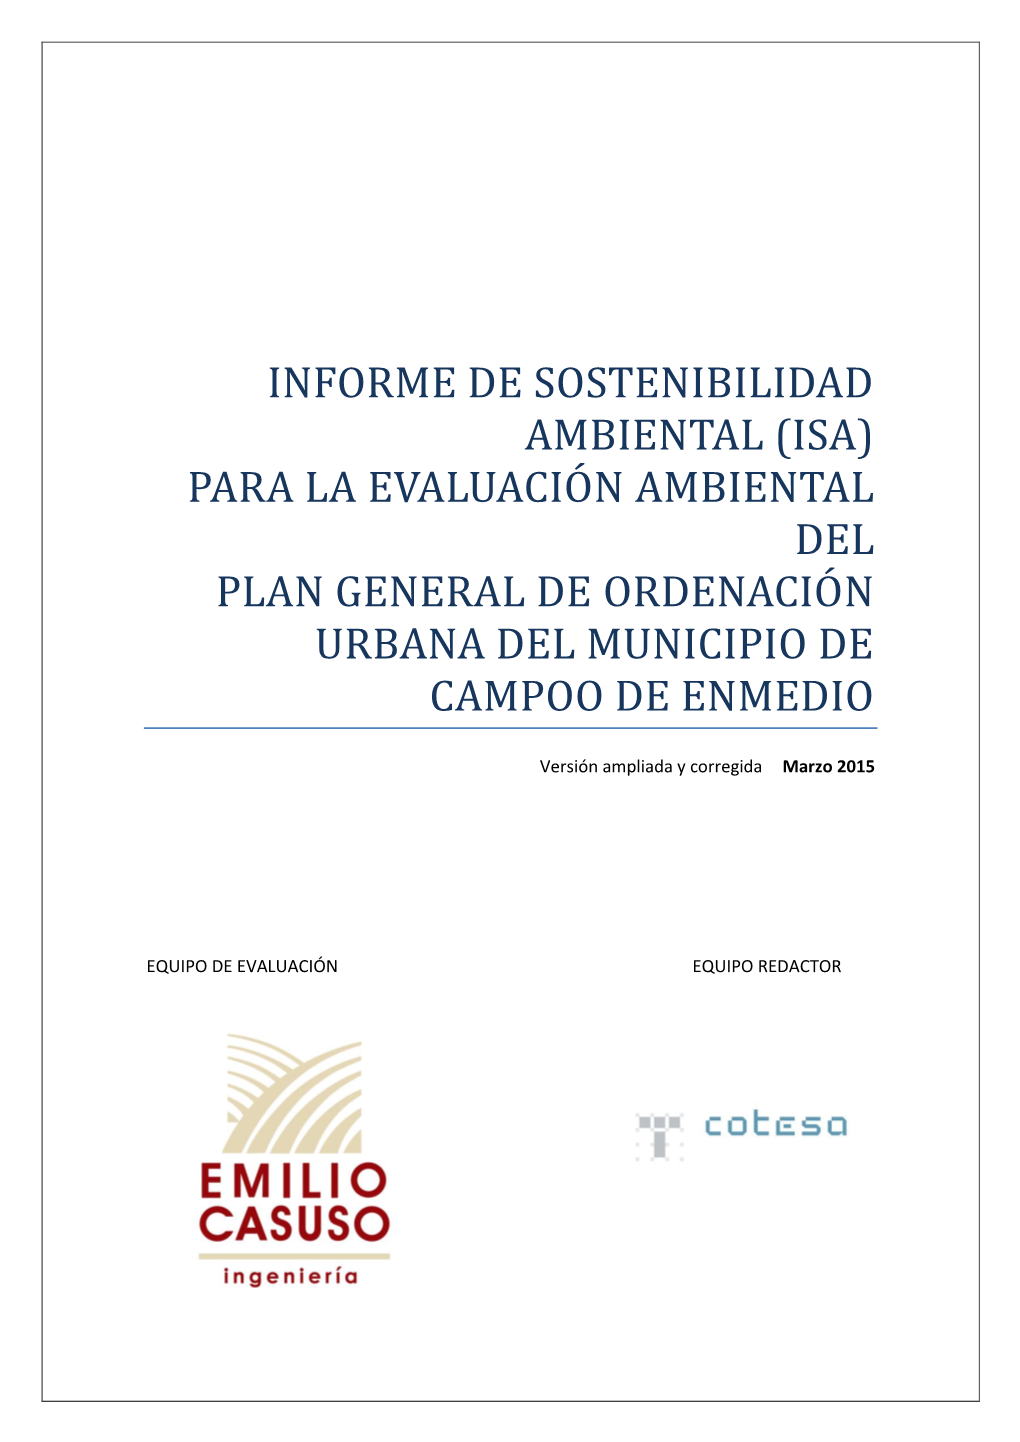 Informe De Sostenibilidad Ambiental (Isa) Para La Evaluacio N Ambiental Del Plan General De Ordenacio N Urbana Del Municipio De Campoo De Enmedio